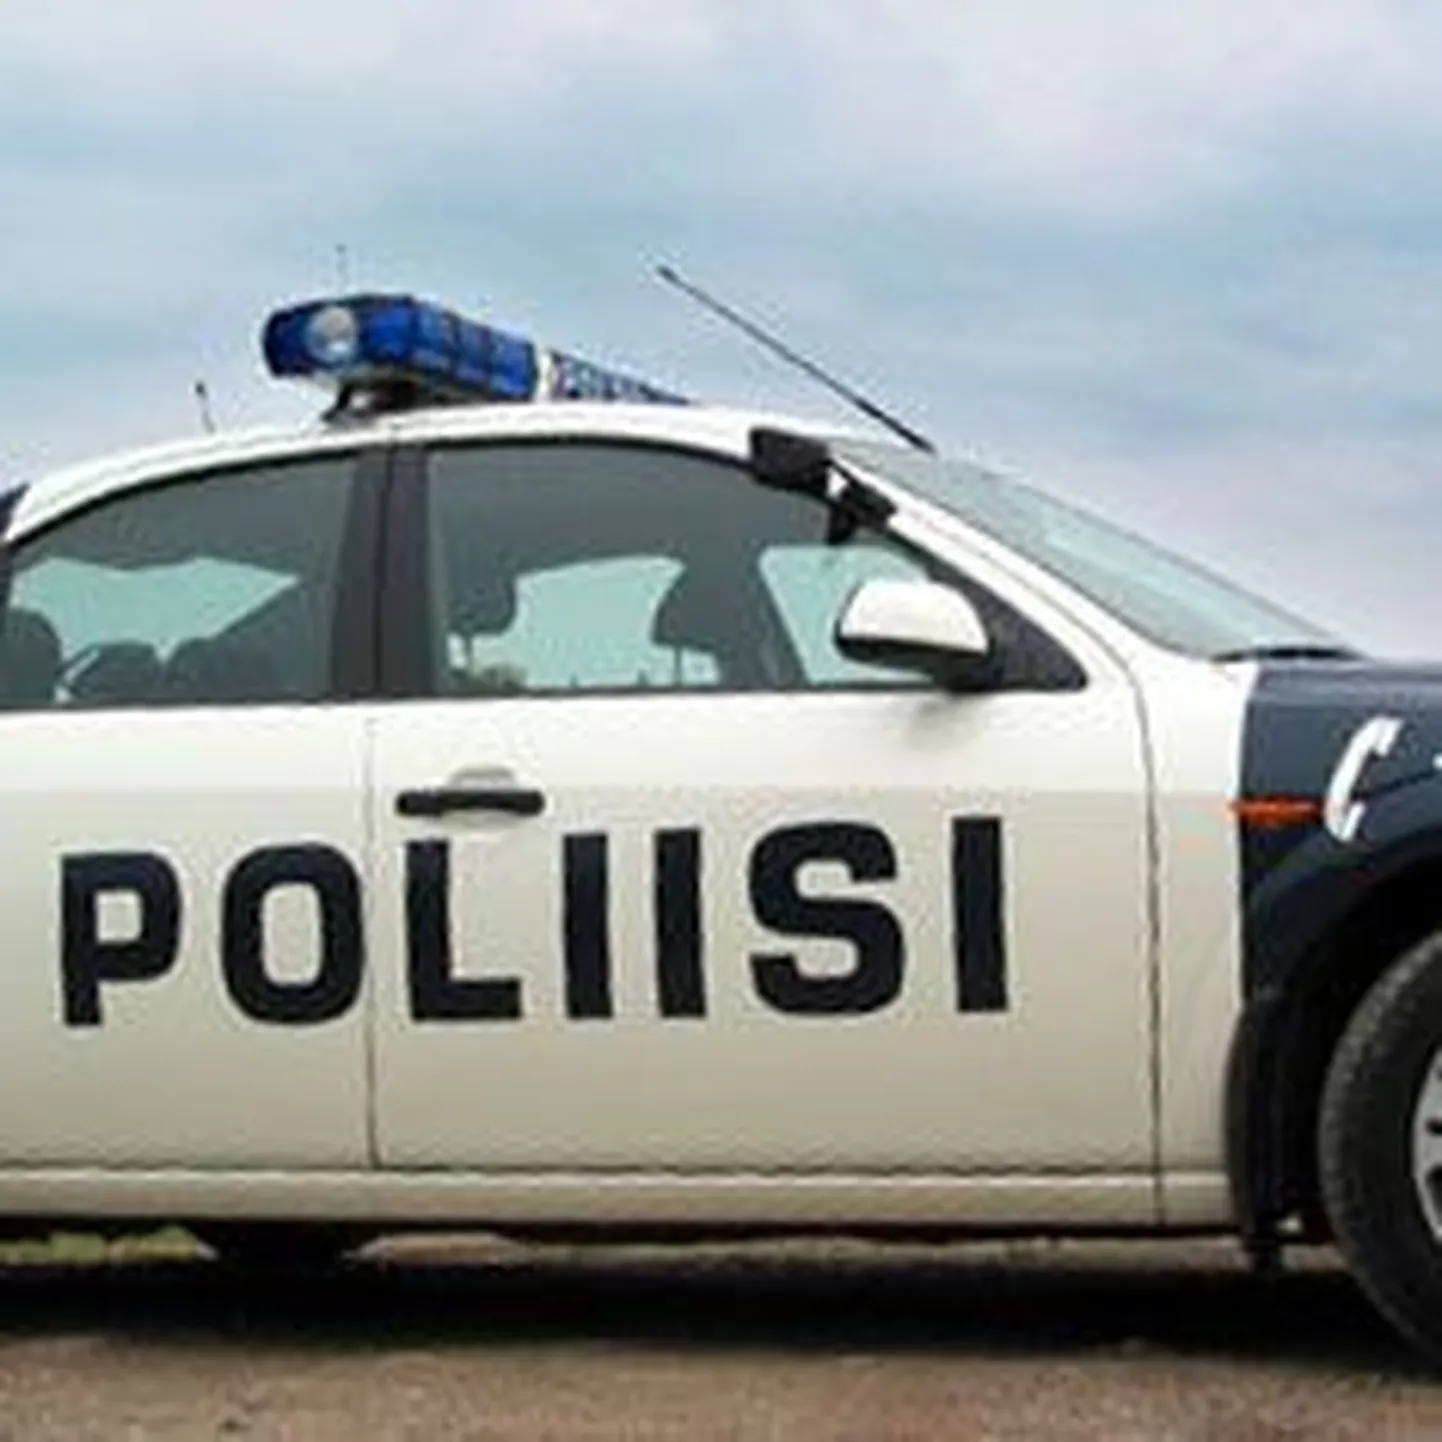 Soome politsei auto